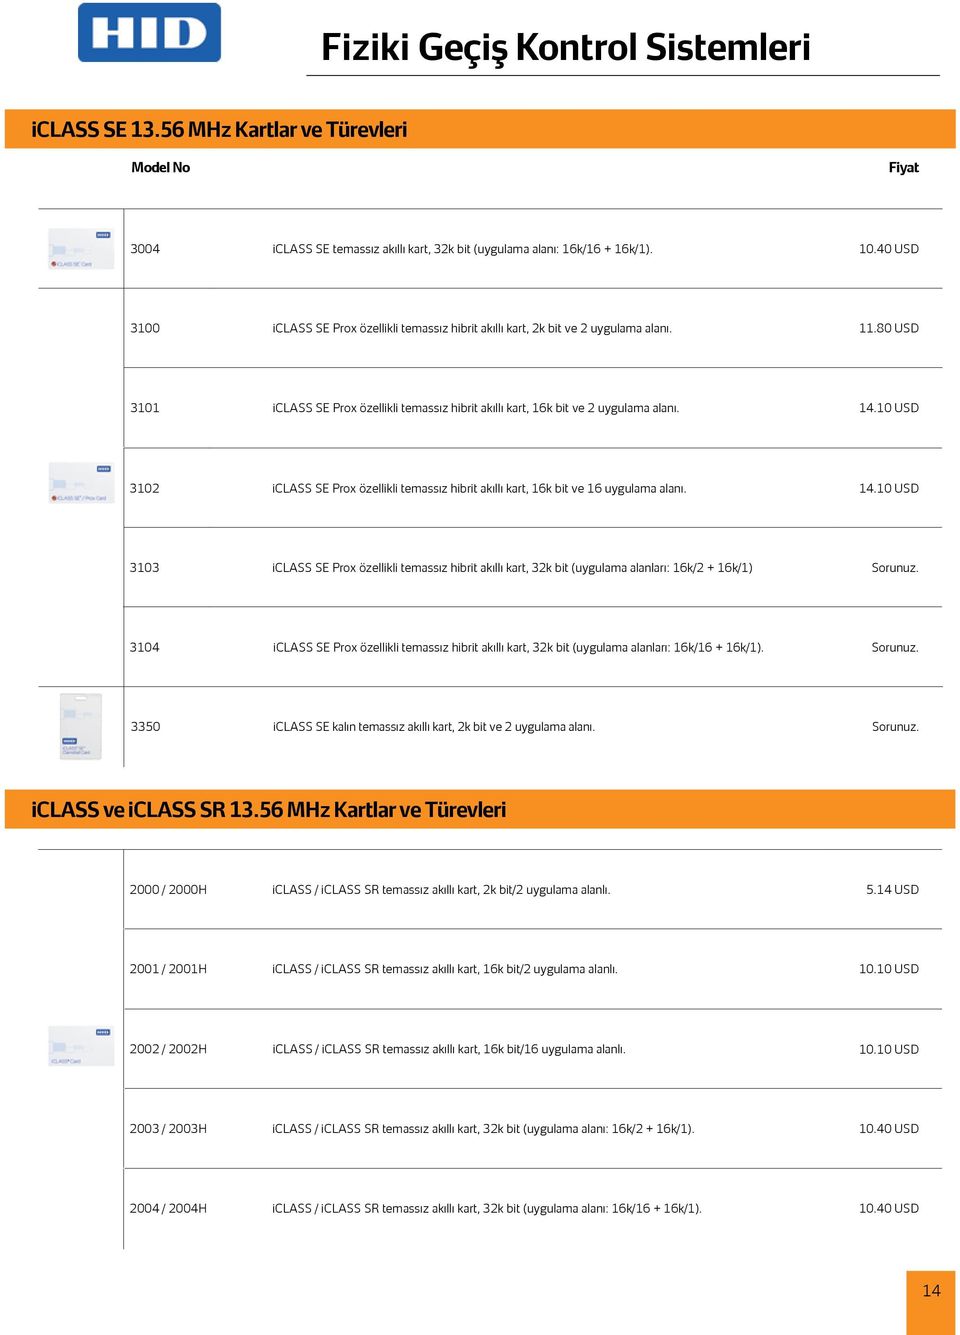 10 USD 3102 iclass SE Prox özellikli temassız hibrit akıllı kart, 16k bit ve 16 uygulama alanı. 14.